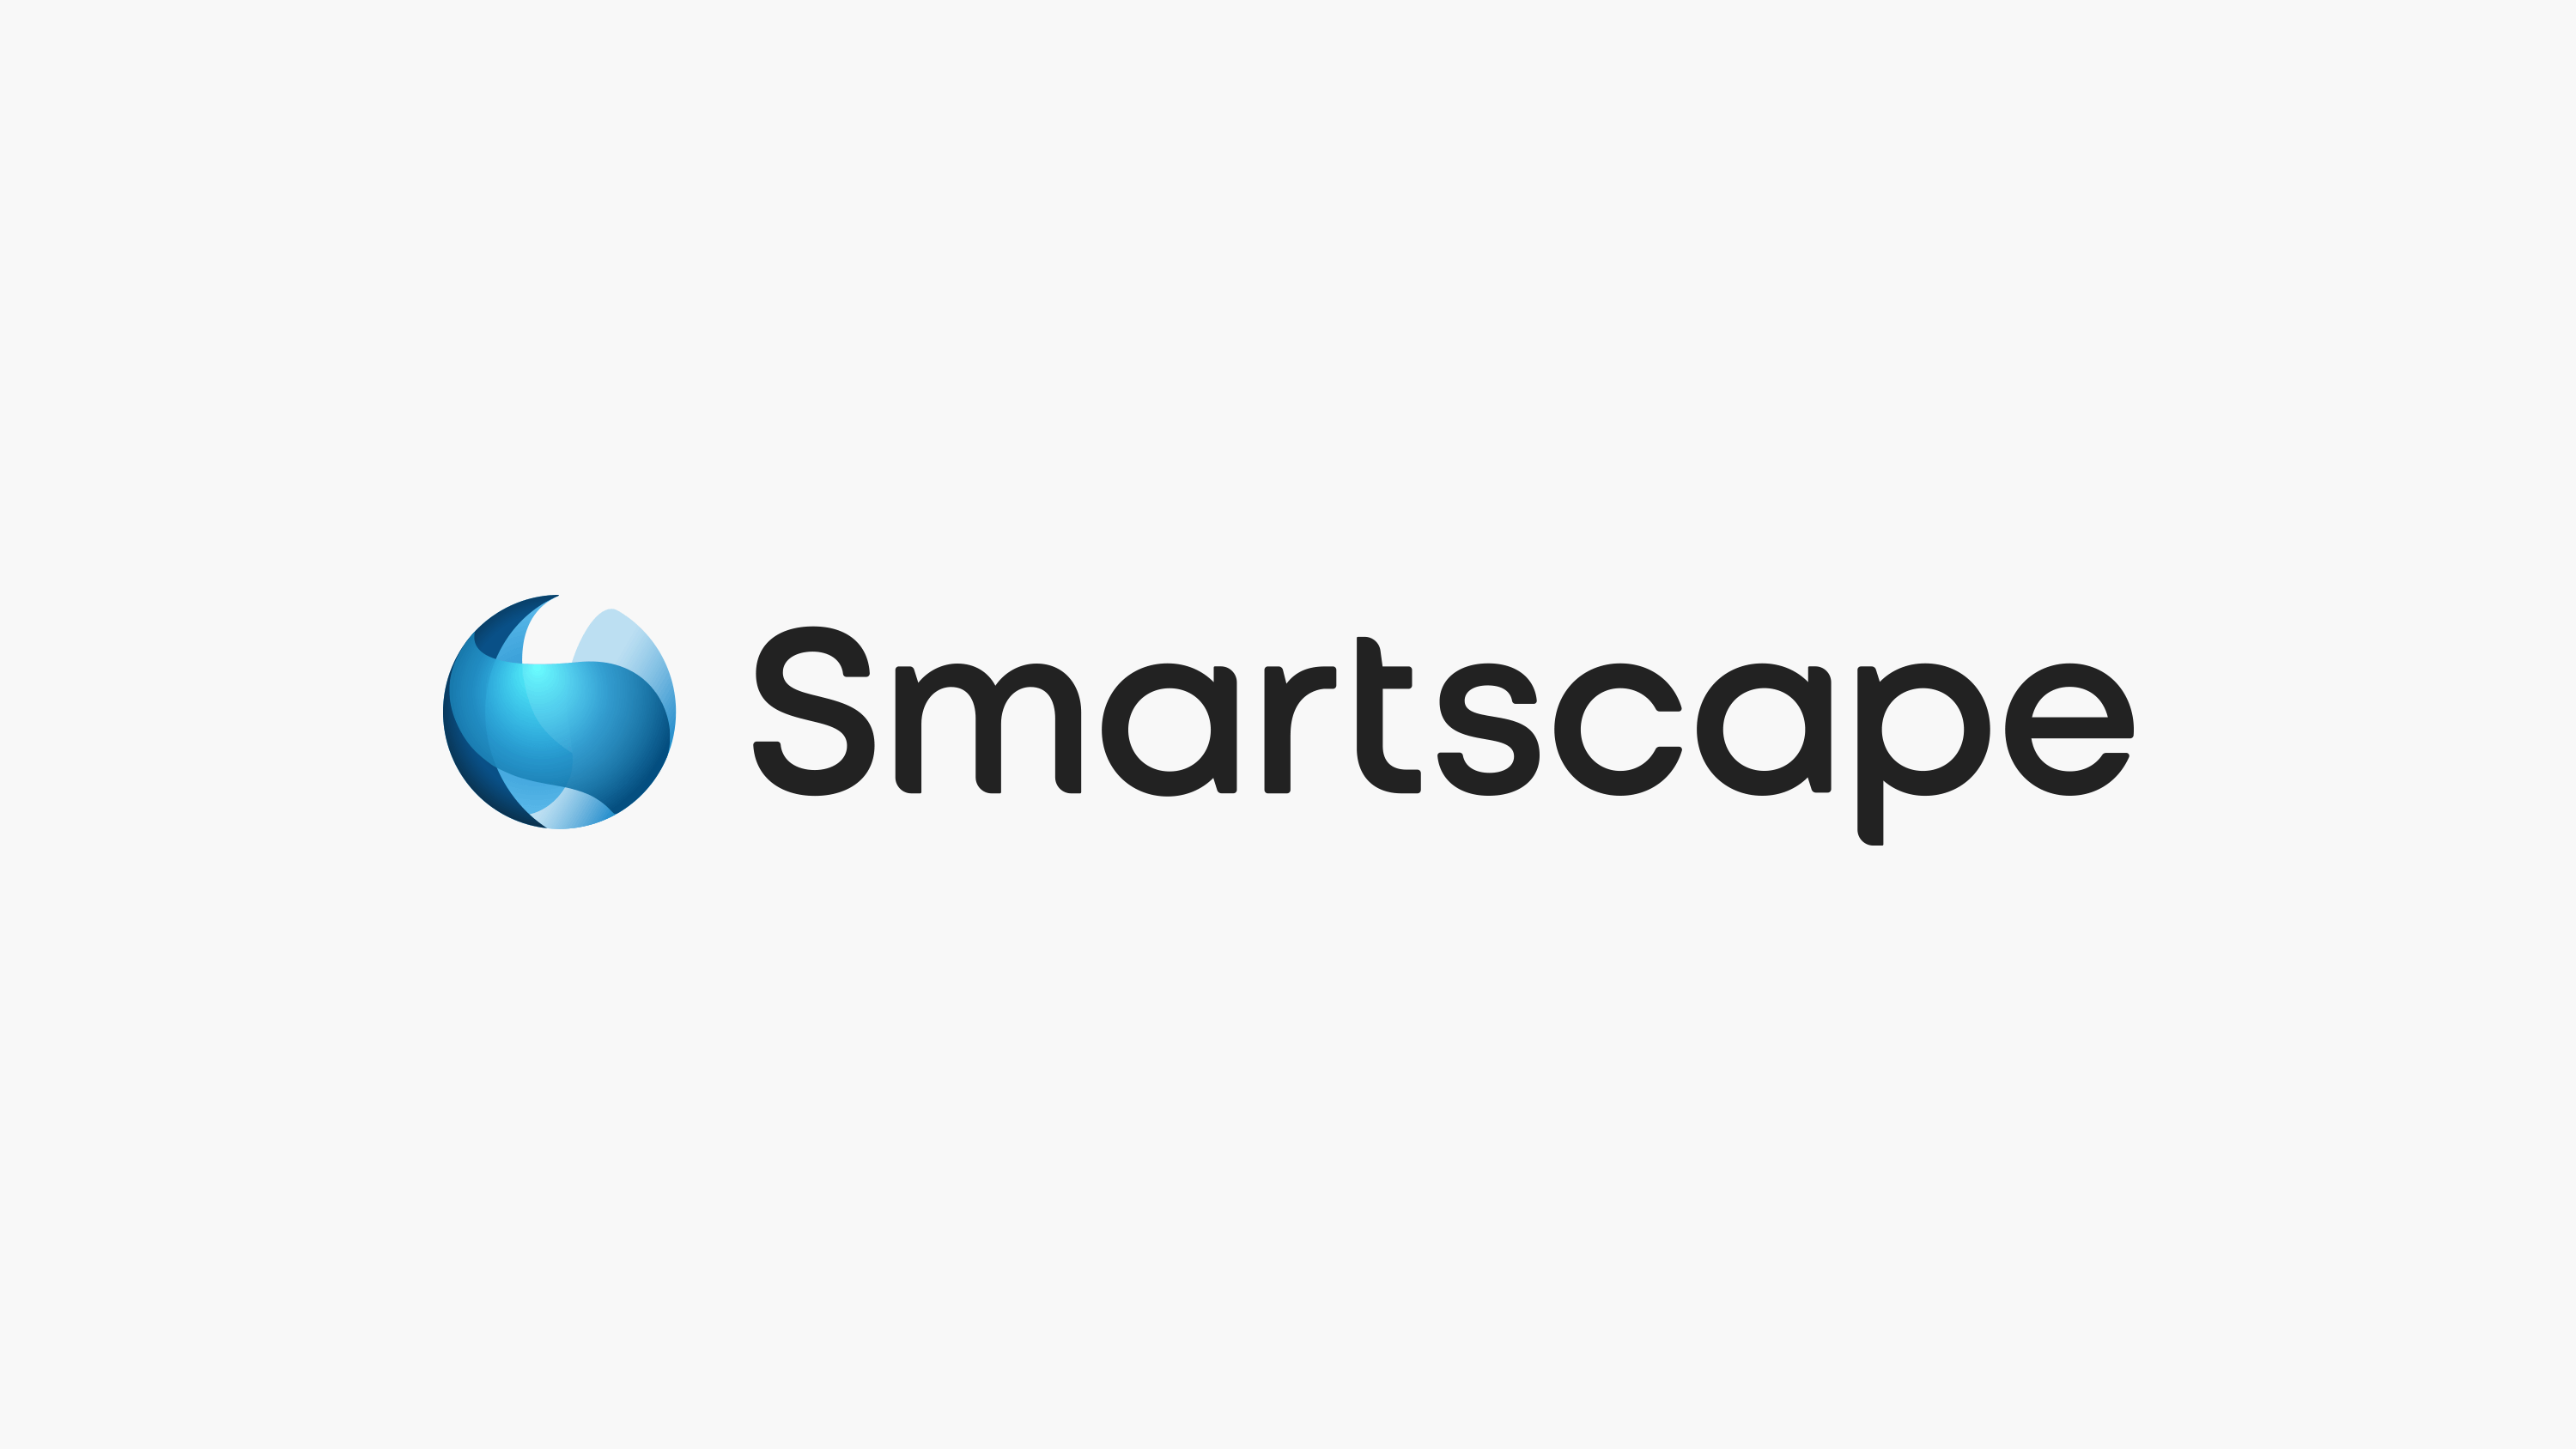 Scotscape Smartscape logo